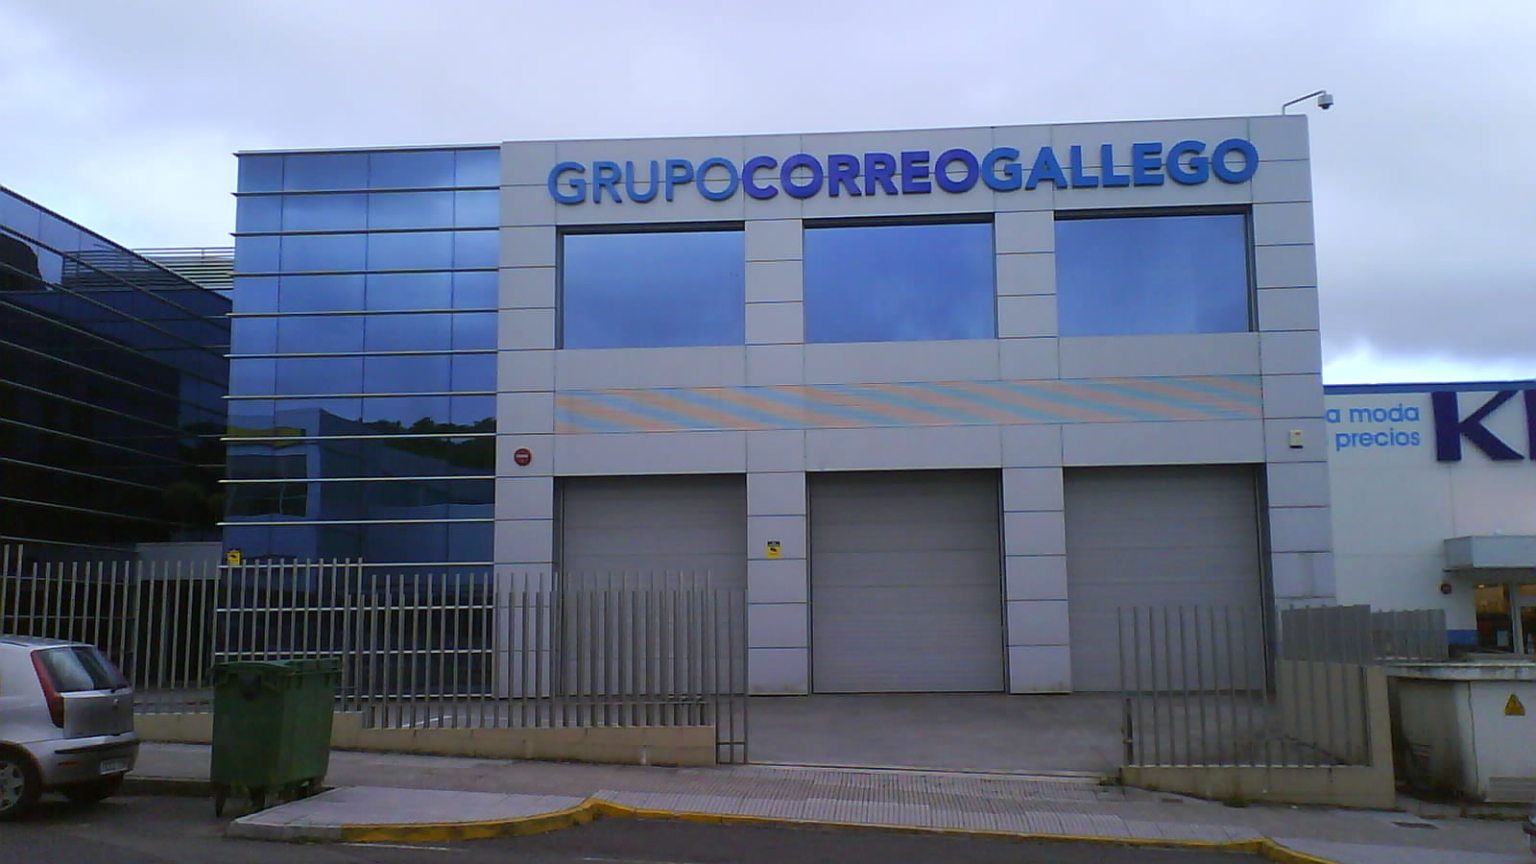 Un juzgado confirma la adquisición de ‘El Correo Gallego’ por parte de Prensa Ibérica